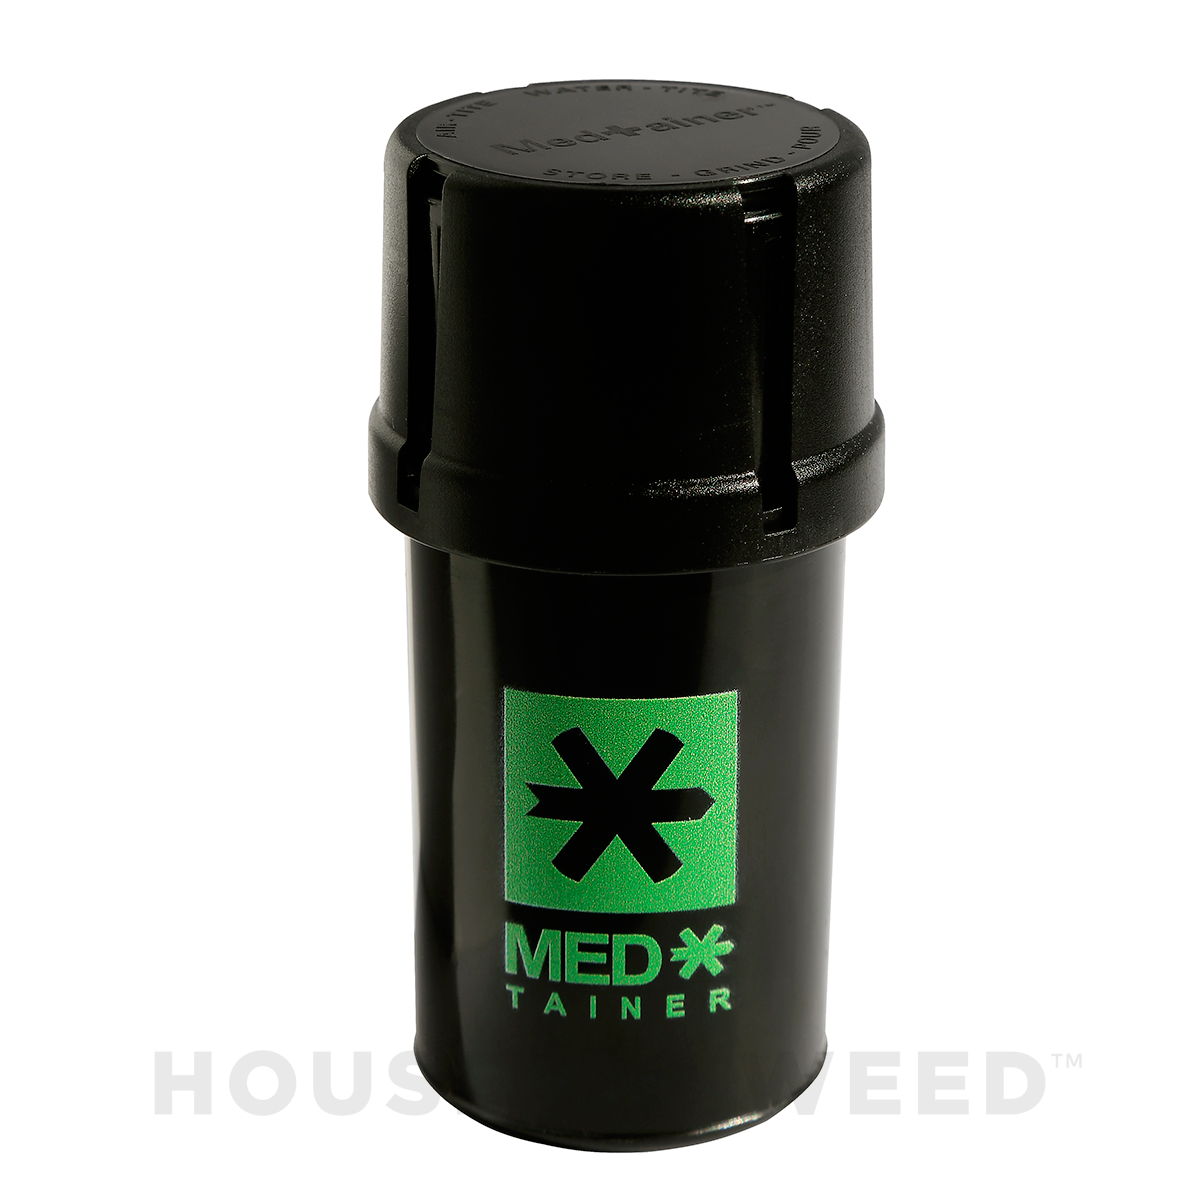 Moledor y contenedor de la marca Medtainer color verde